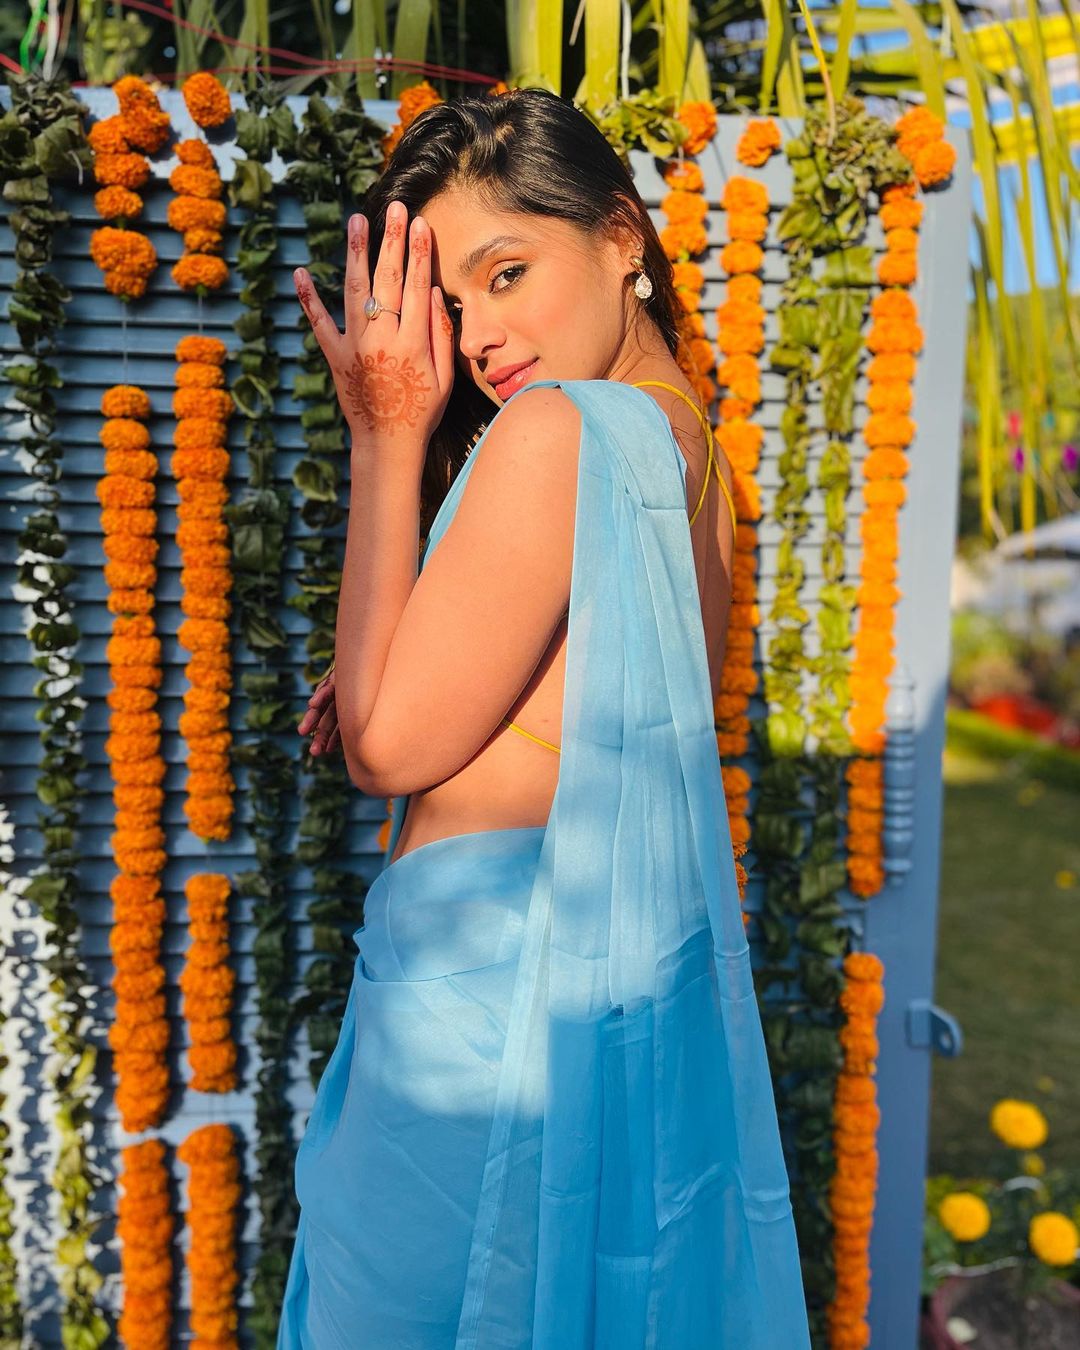 Actress pranati rai prakash glamorou show images-Actresspranati, Pranatirai Photos,Spicy Hot Pics,Images,High Resolution WallPapers Download